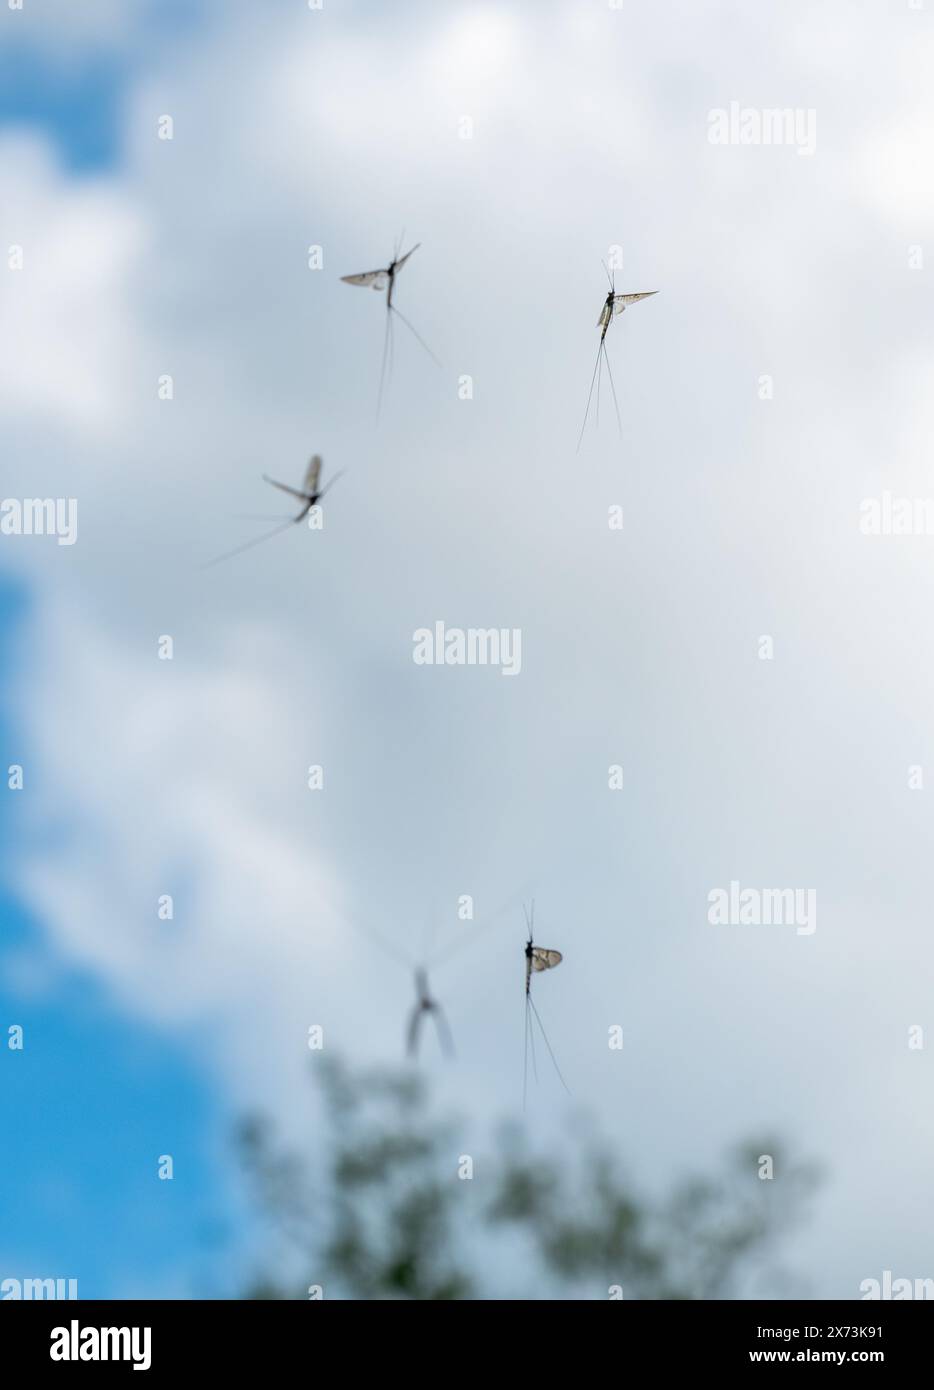 Le lucciole ballano nel cielo lungo il Tamigi durante il mese di maggio eseguendo una danza nuziale o di corteggiamento per attrarre le femmine, Inghilterra, Regno Unito Foto Stock